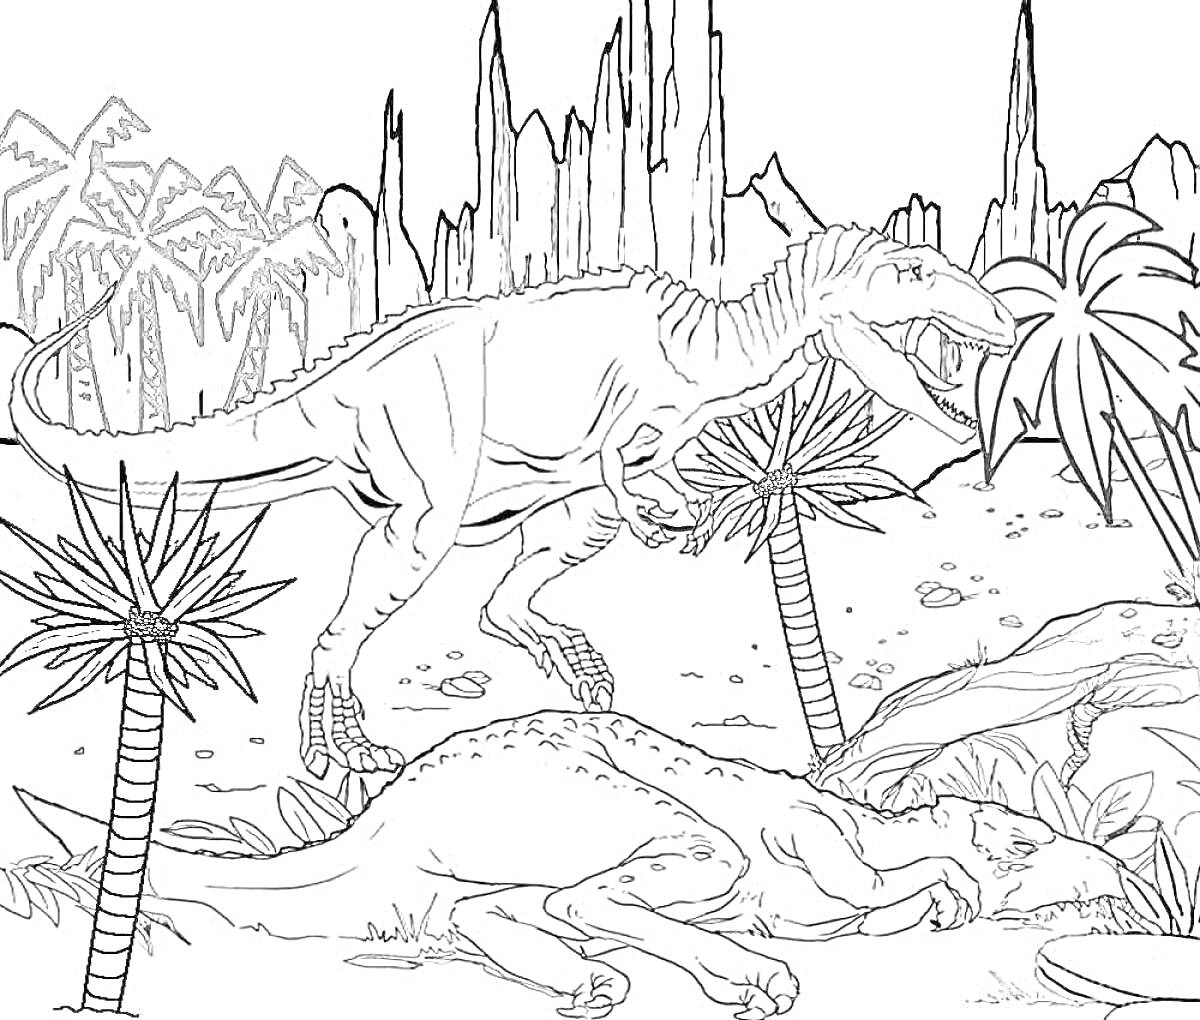 Раскраска Два динозавра в юрском парке (один динозавр стоит, второй лежит), пальмы, горы, кусты